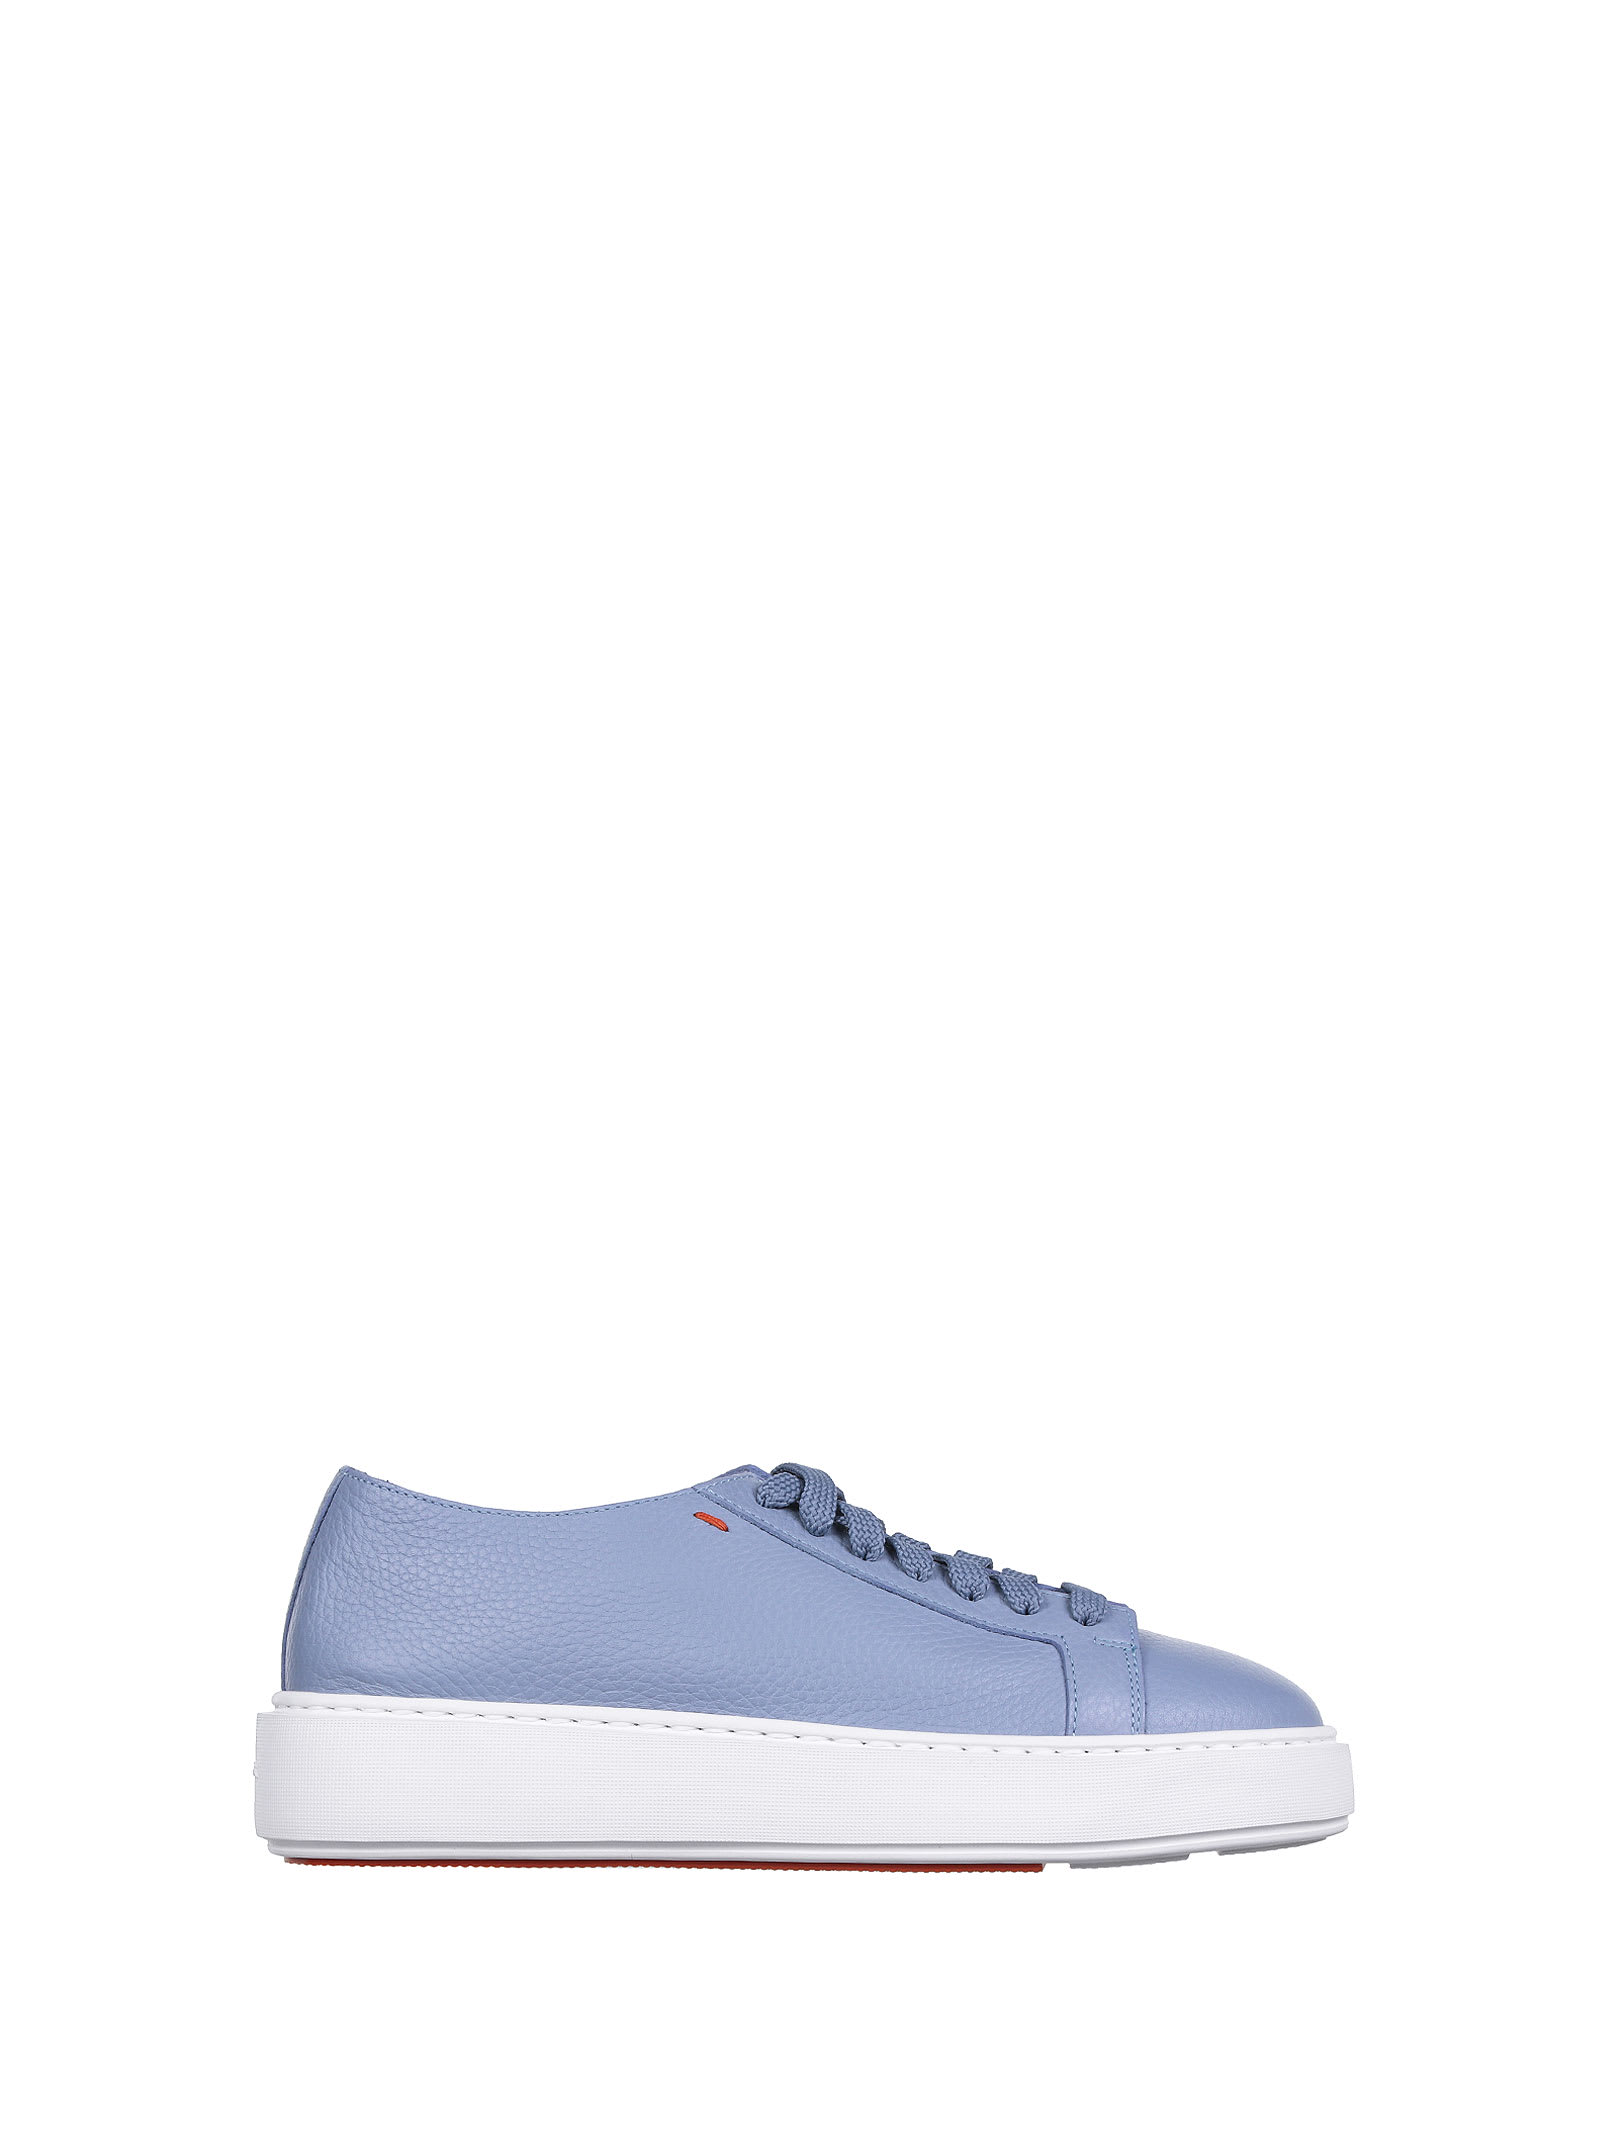 Santoni Santoni Light Blue Low-top Sneaker